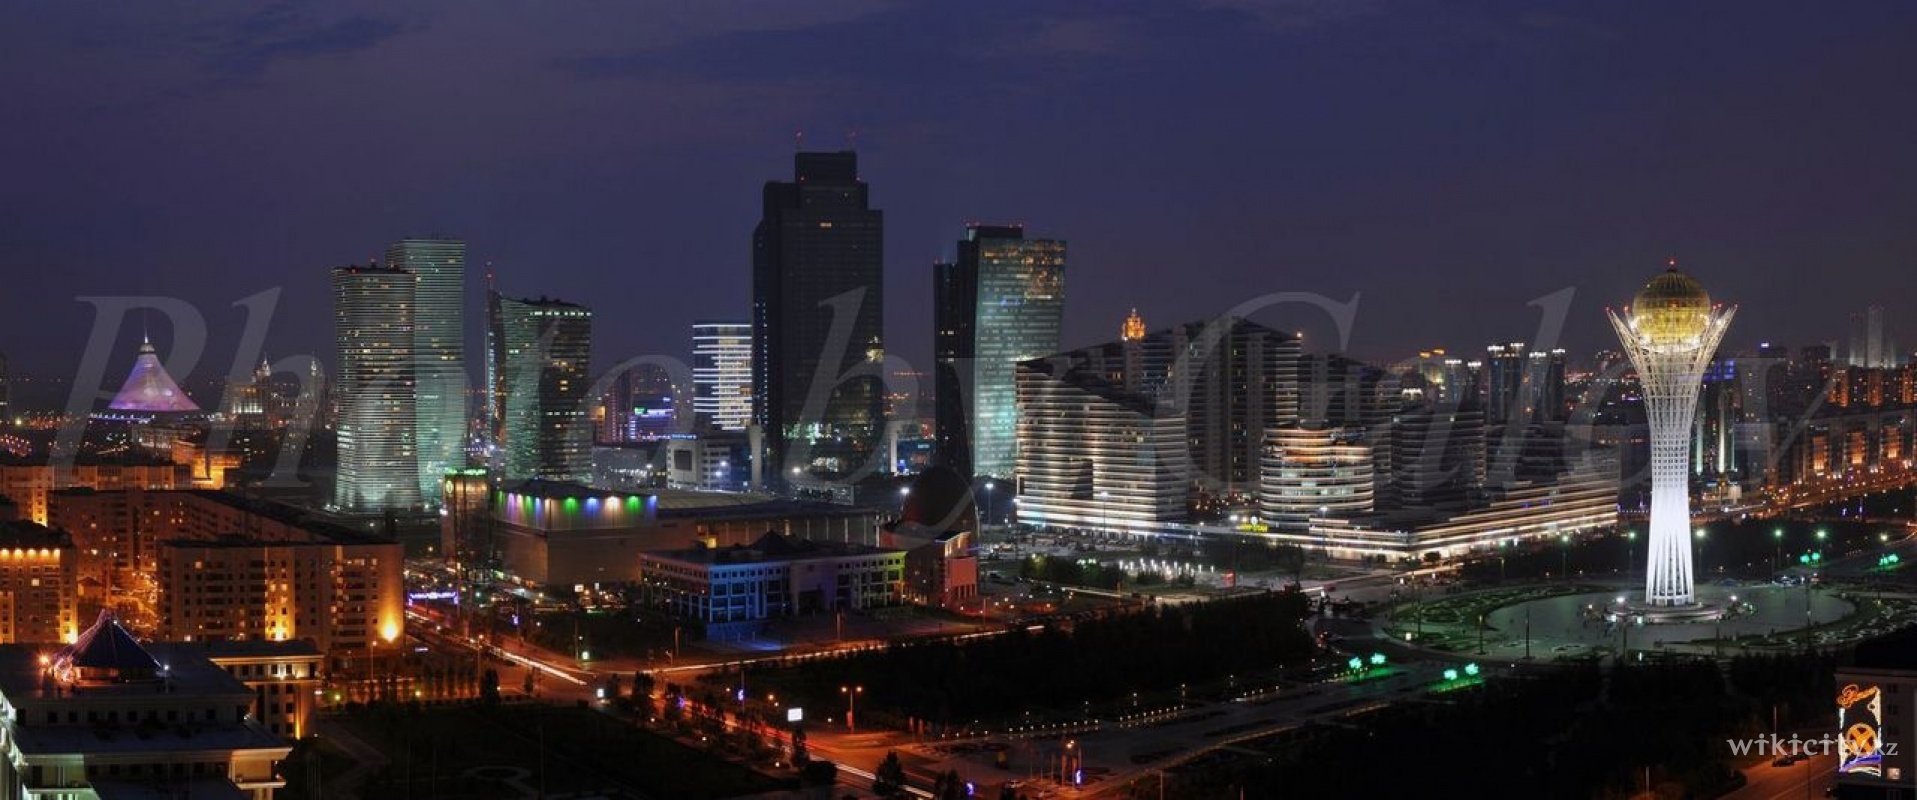 Фото La Mansarde - Astana. Ночной вид.